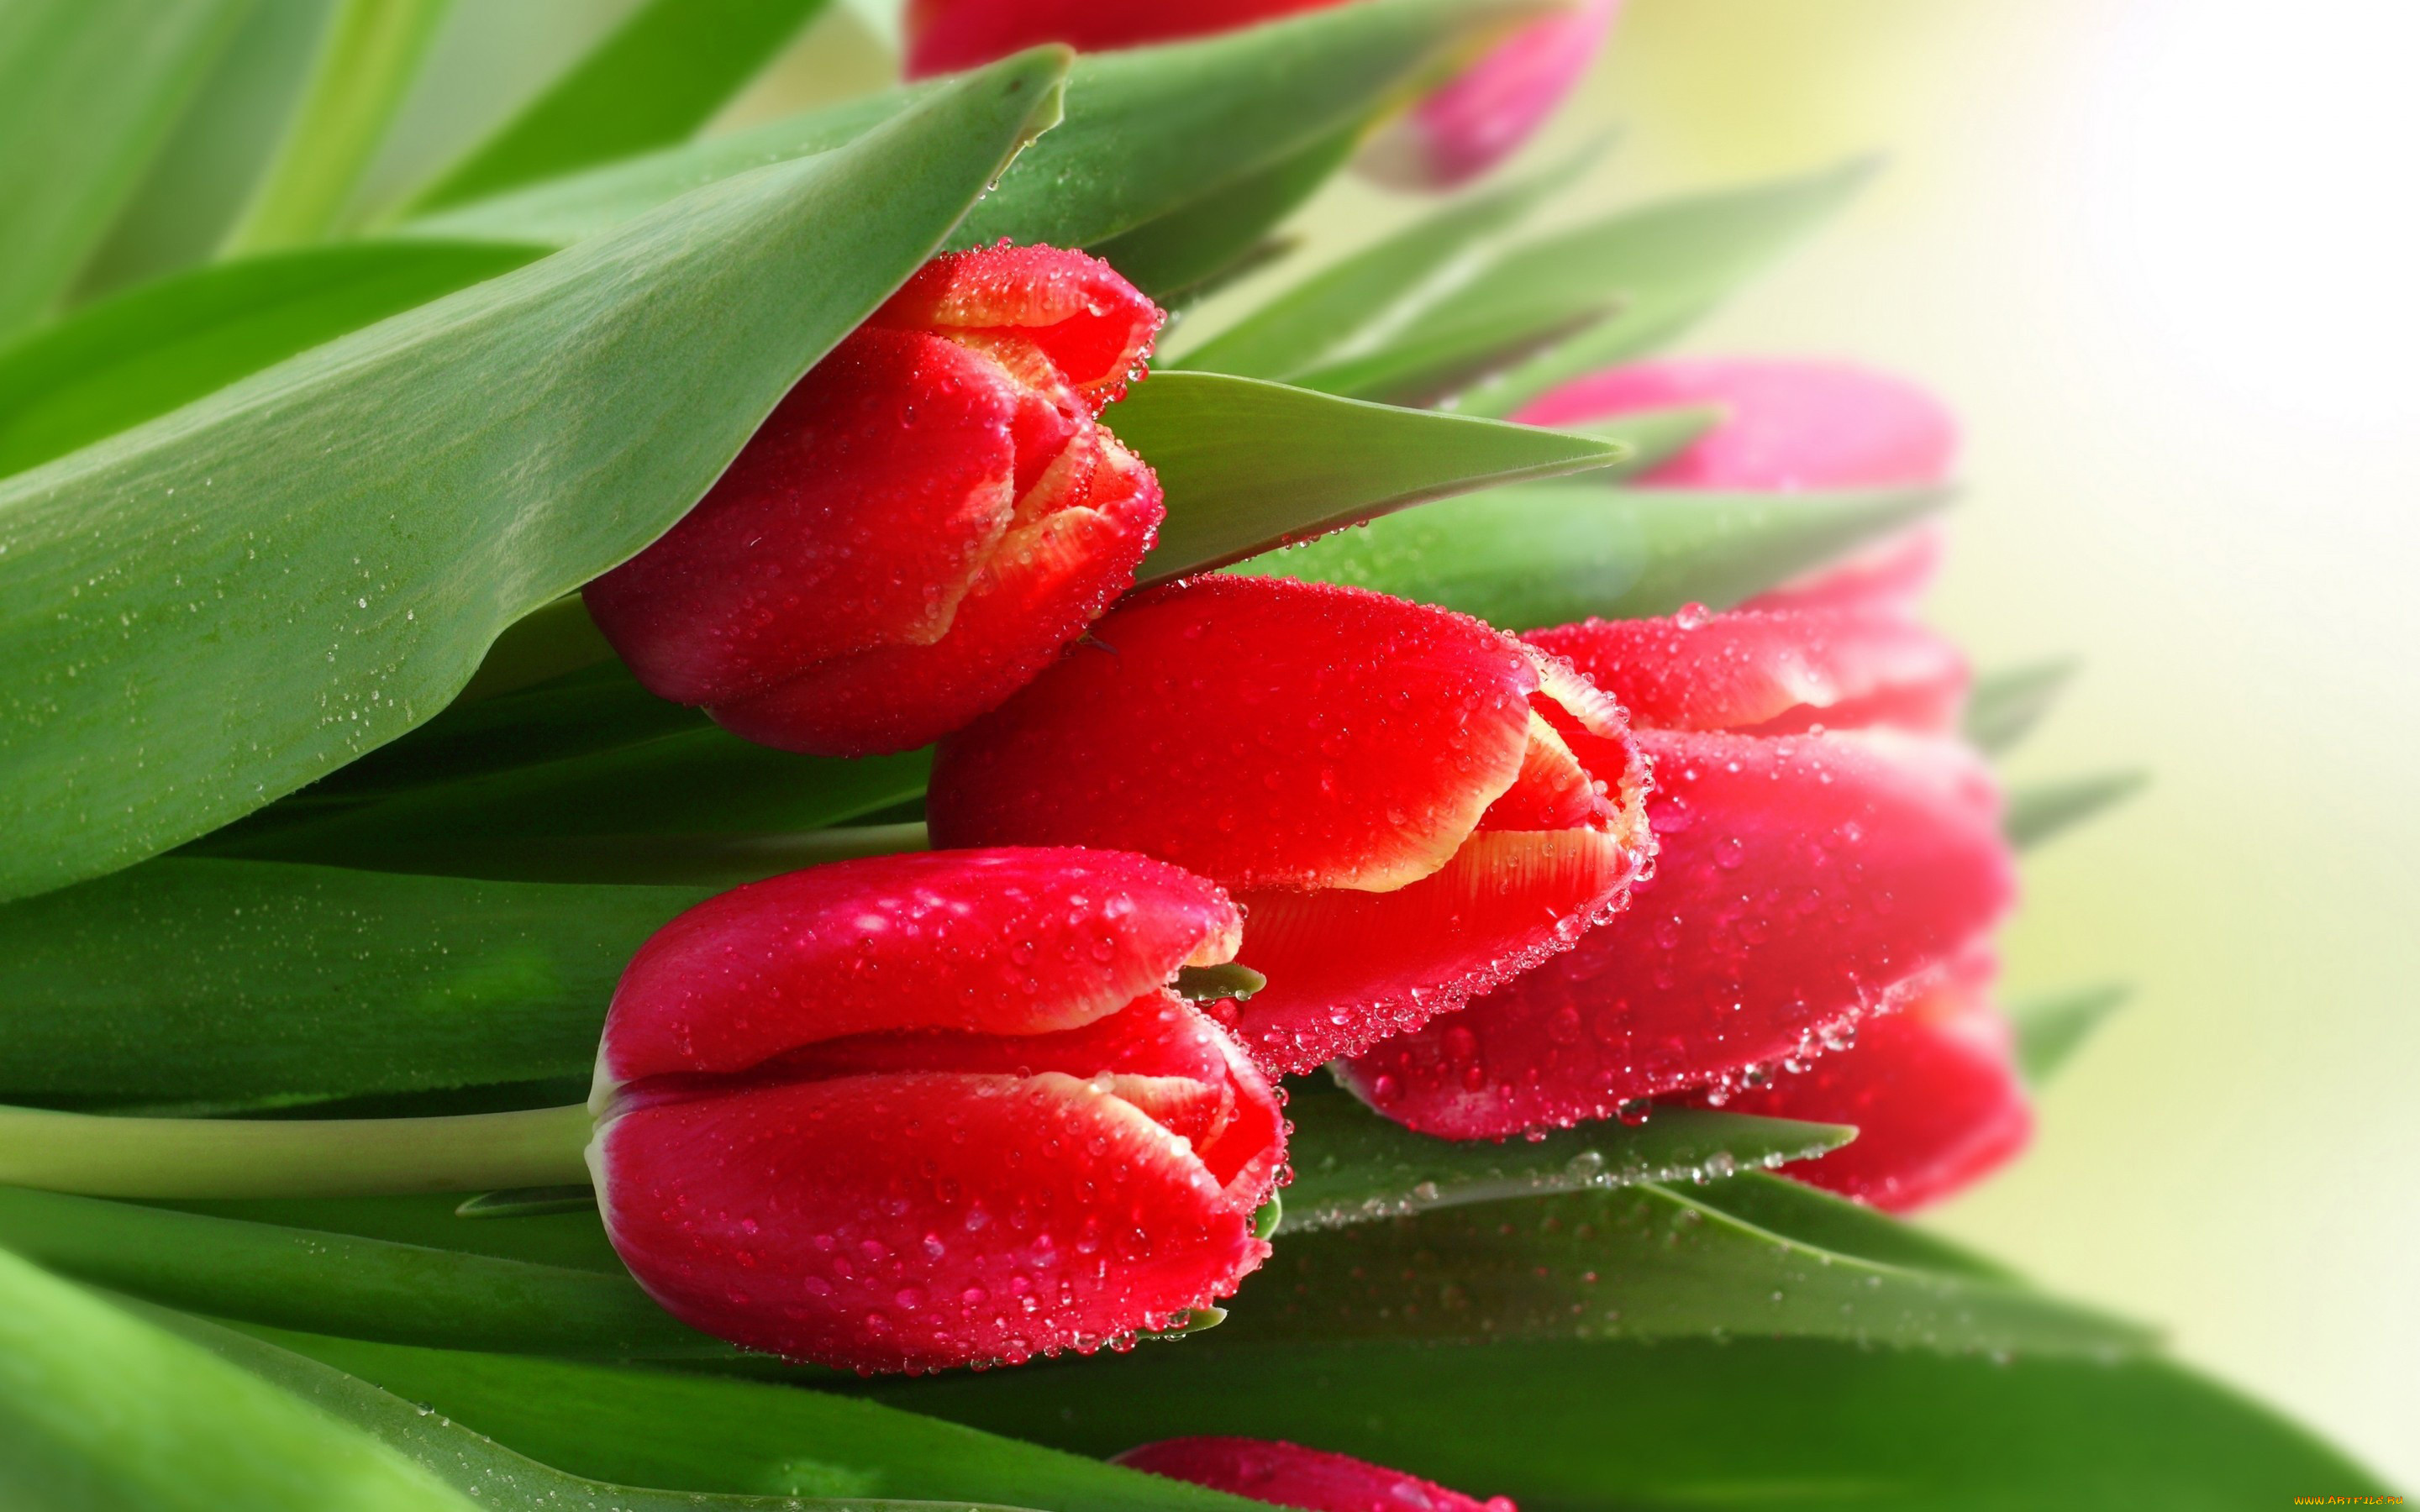 Обои на телефон красивые тюльпаны. Цветы тюльпаны. Красивые тюльпаны. Красные тюльпаны.